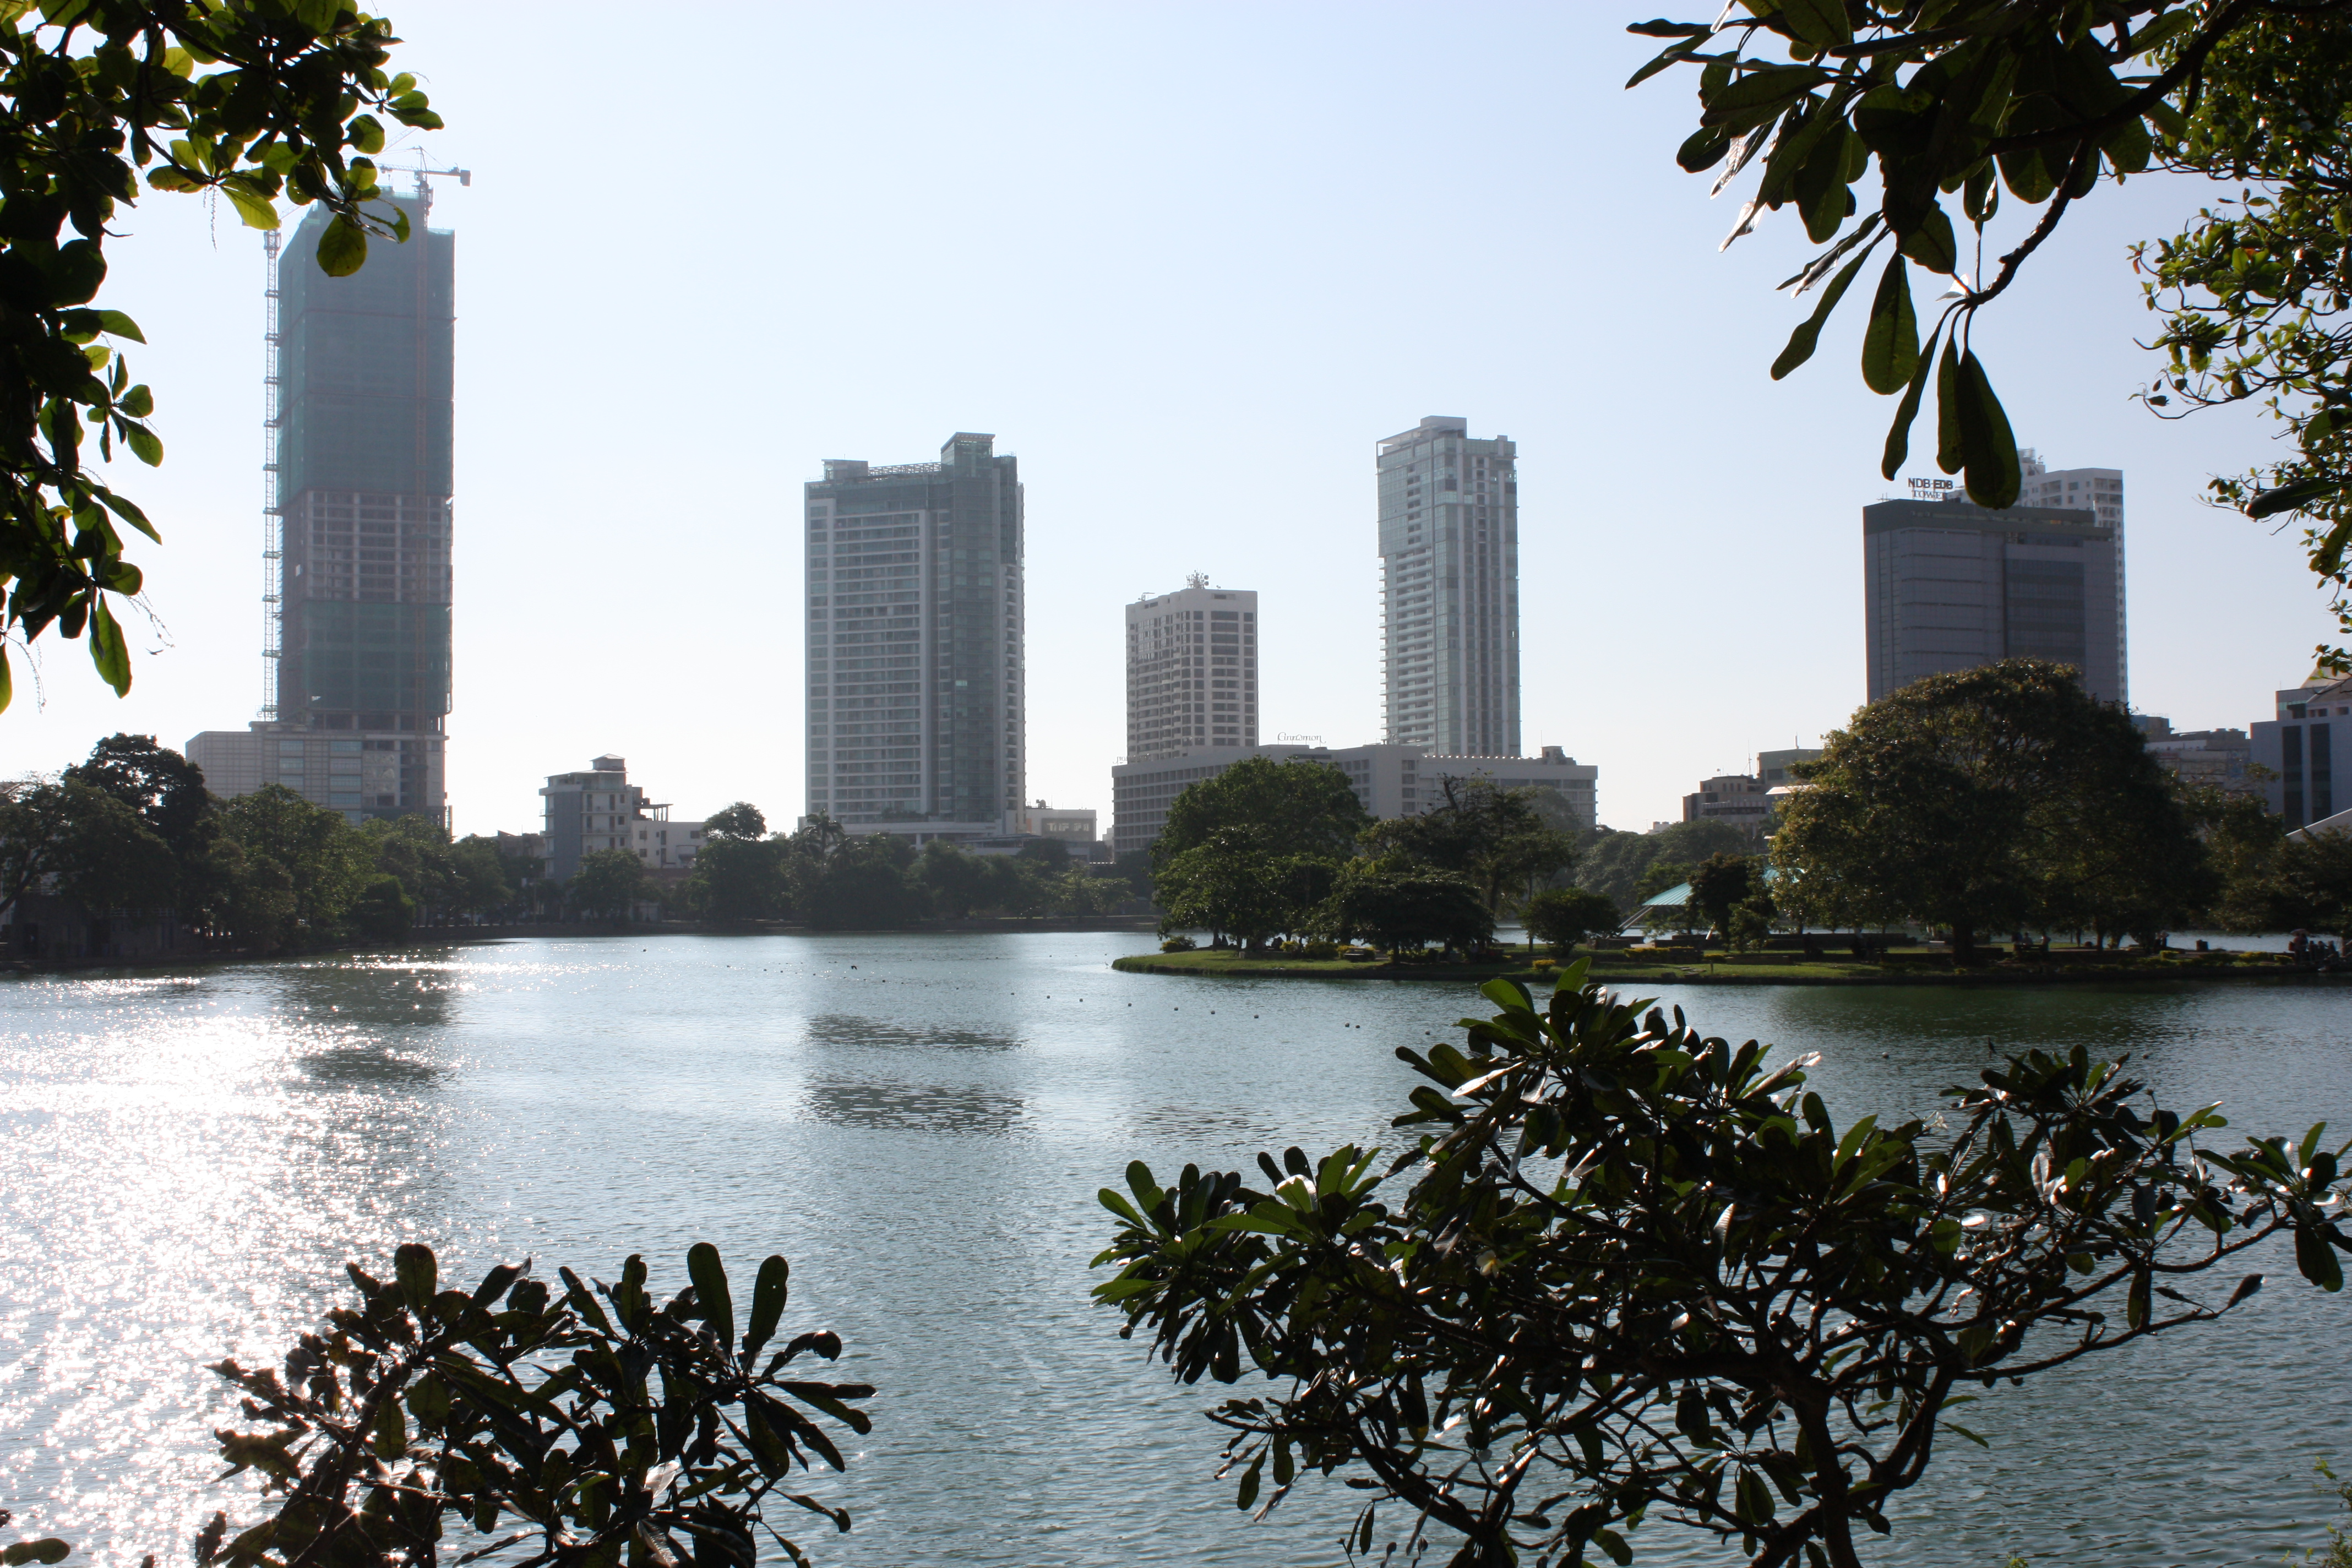 Colombo, Sri Lanka (photo credit: ILO Asia-Pacific/flickr)